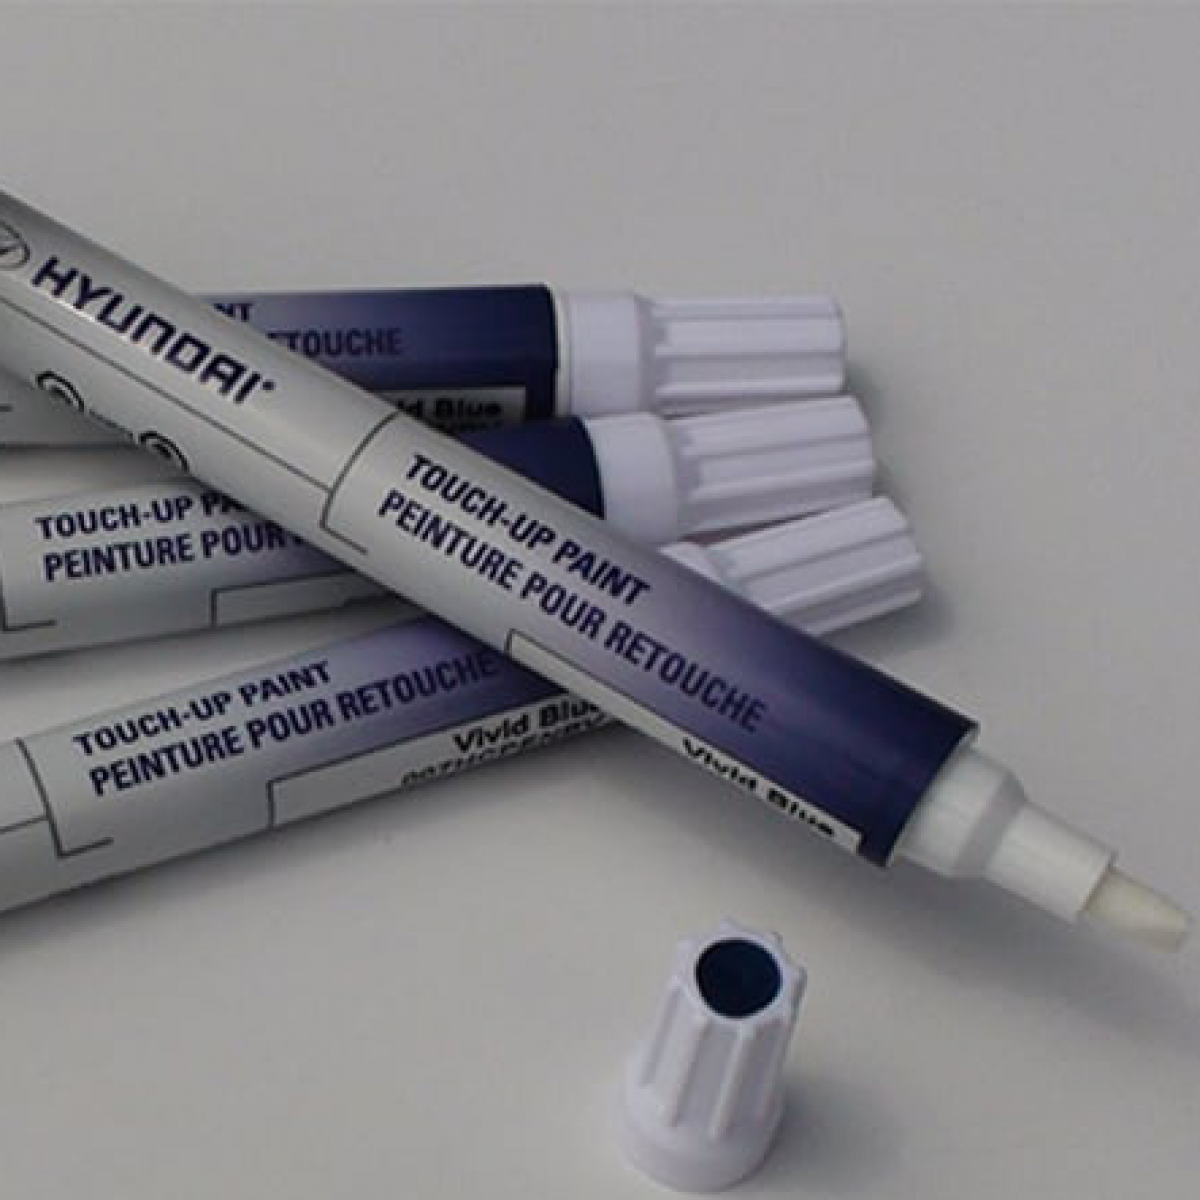 Hyundai Touch-Up Paint Pens - Surfy Blue 000HC-PNV7U